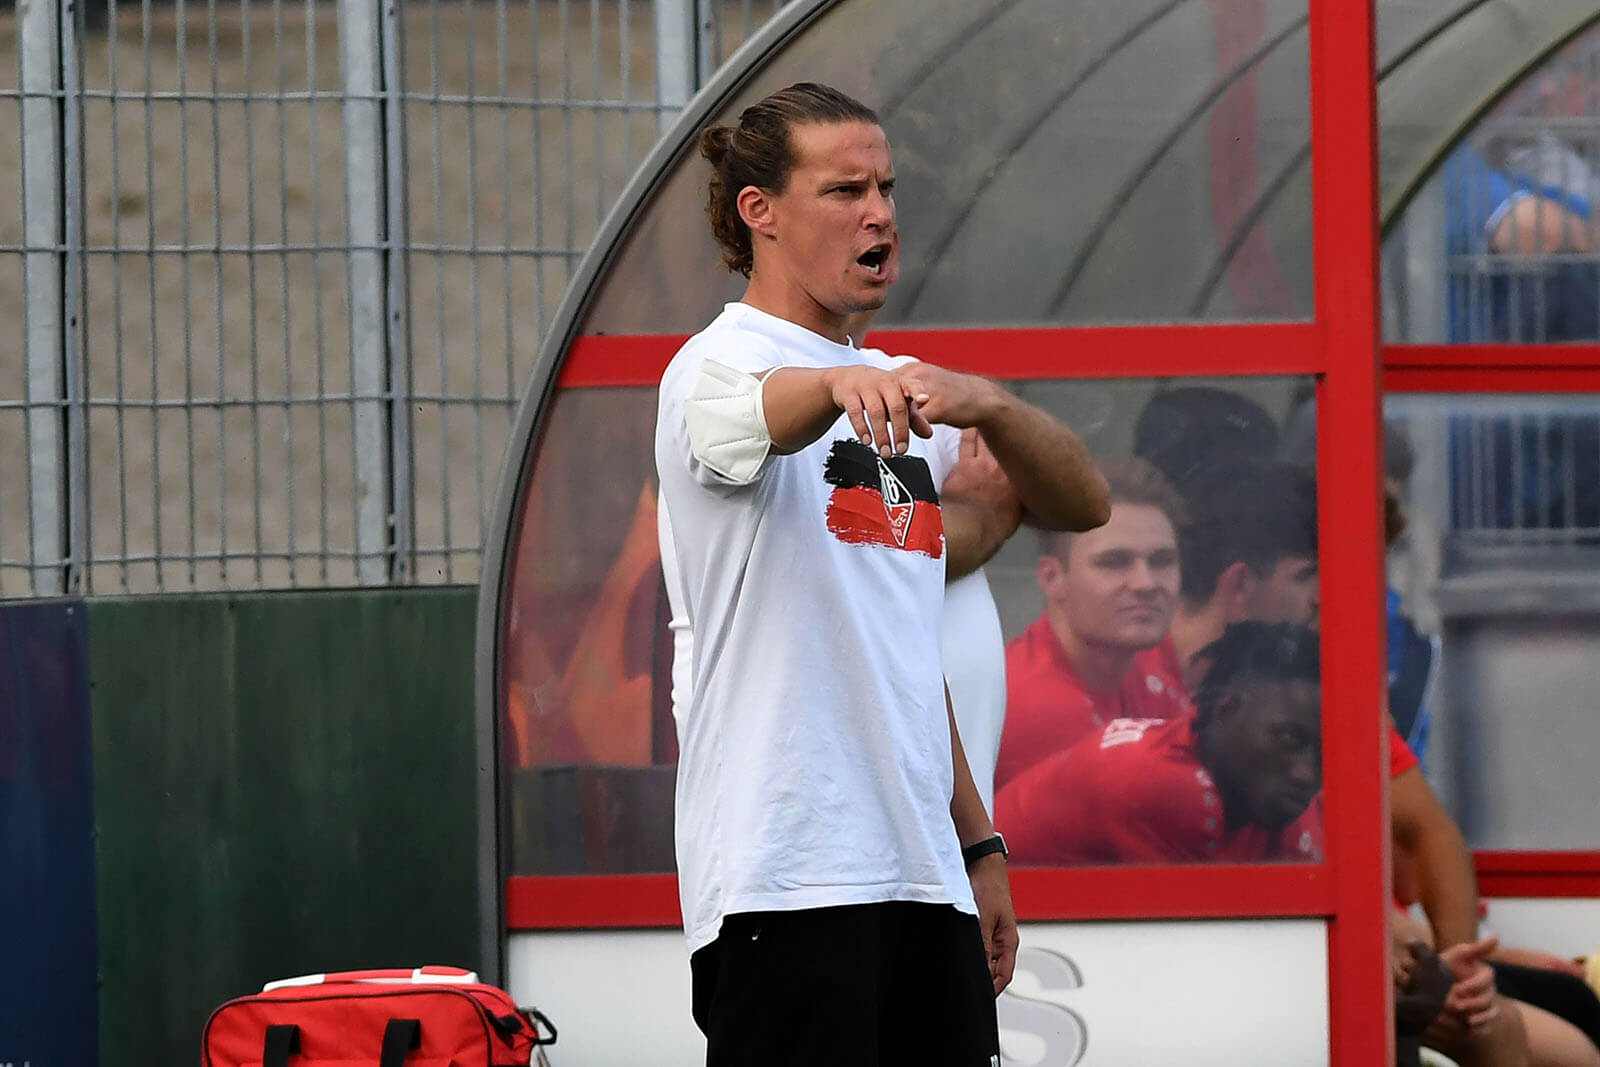  Archivbild: David Pfeiffer als Coach beim VfB Eppingen, wo er von 2017 bis 2022 wirkte. Bild: Siegfried Lörz Kraichgaufoto